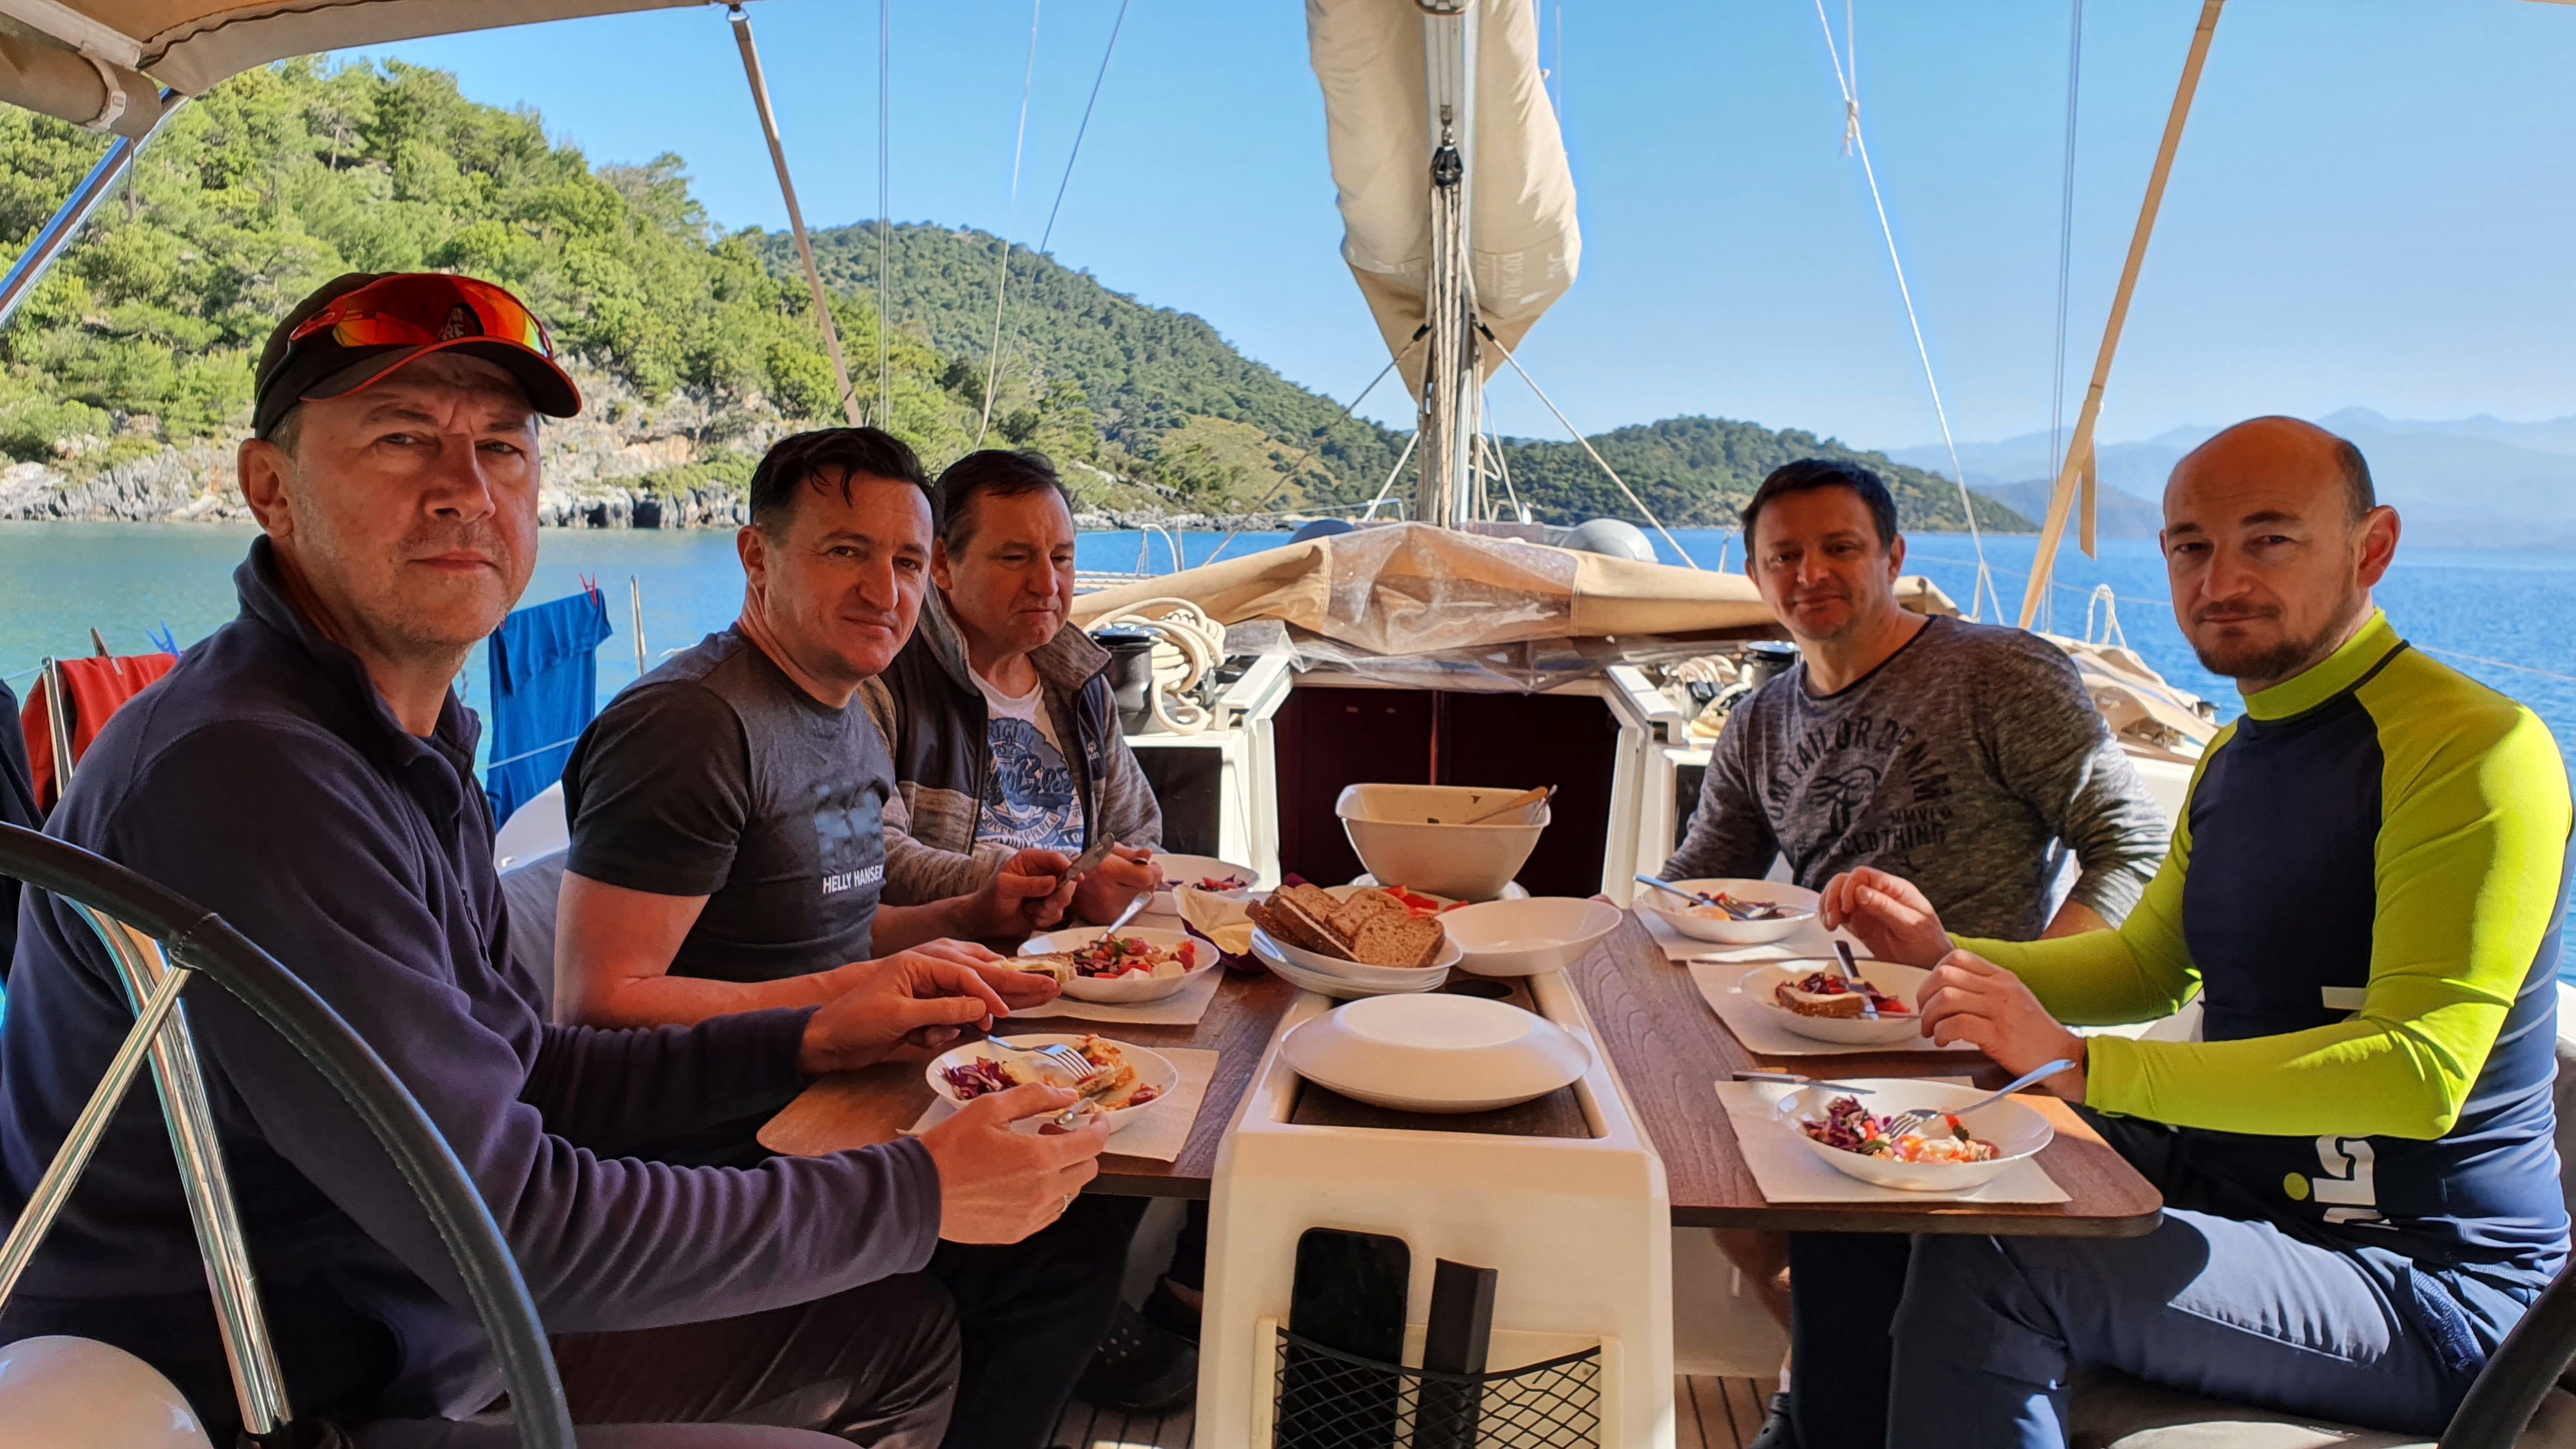 Завтрак на яхте с видом на море в хорошей компании, что может быть лучше!